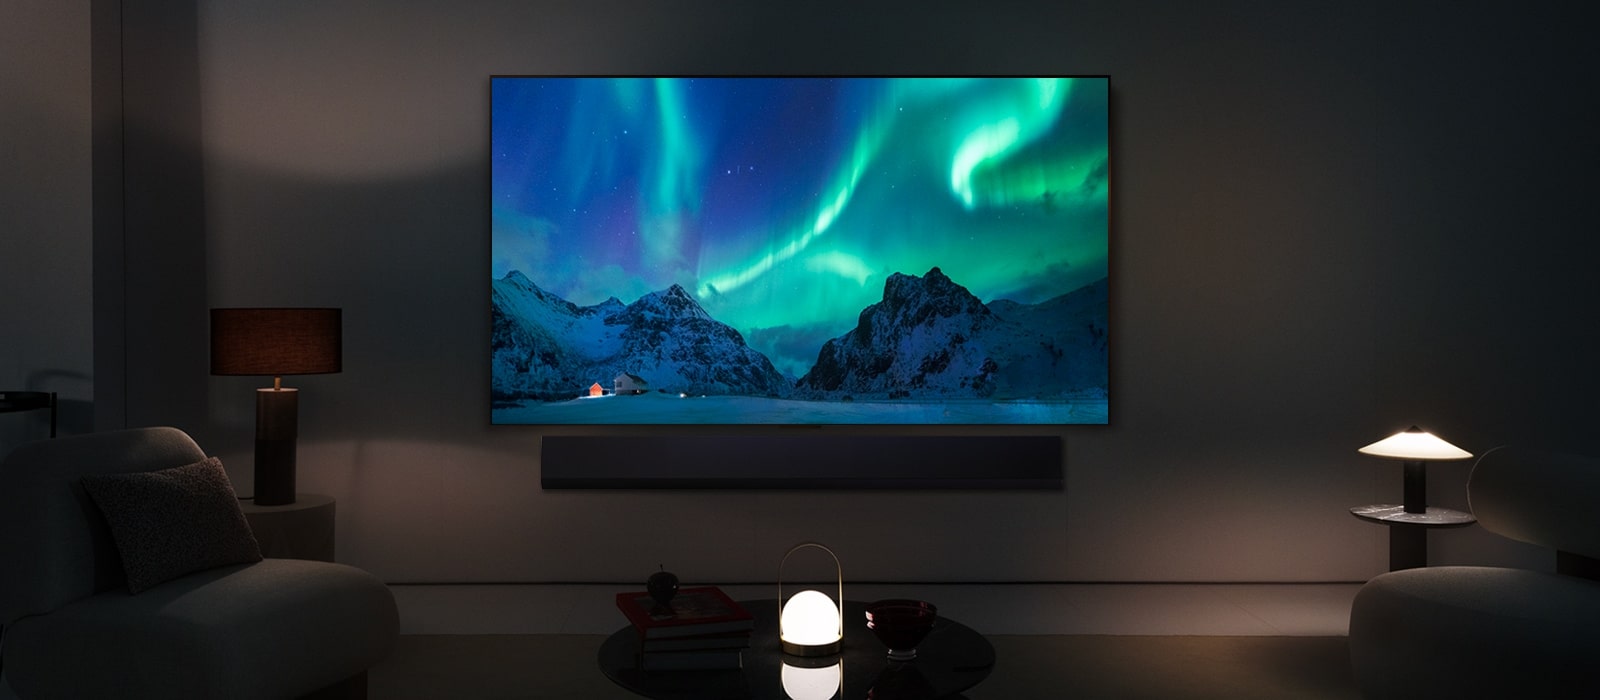 LG OLED TV i soundbar LG w nowoczesnej przestrzeni nocnej. Obraz zorzy polarnej wyświetlany jest z idealnym poziomem jasności.